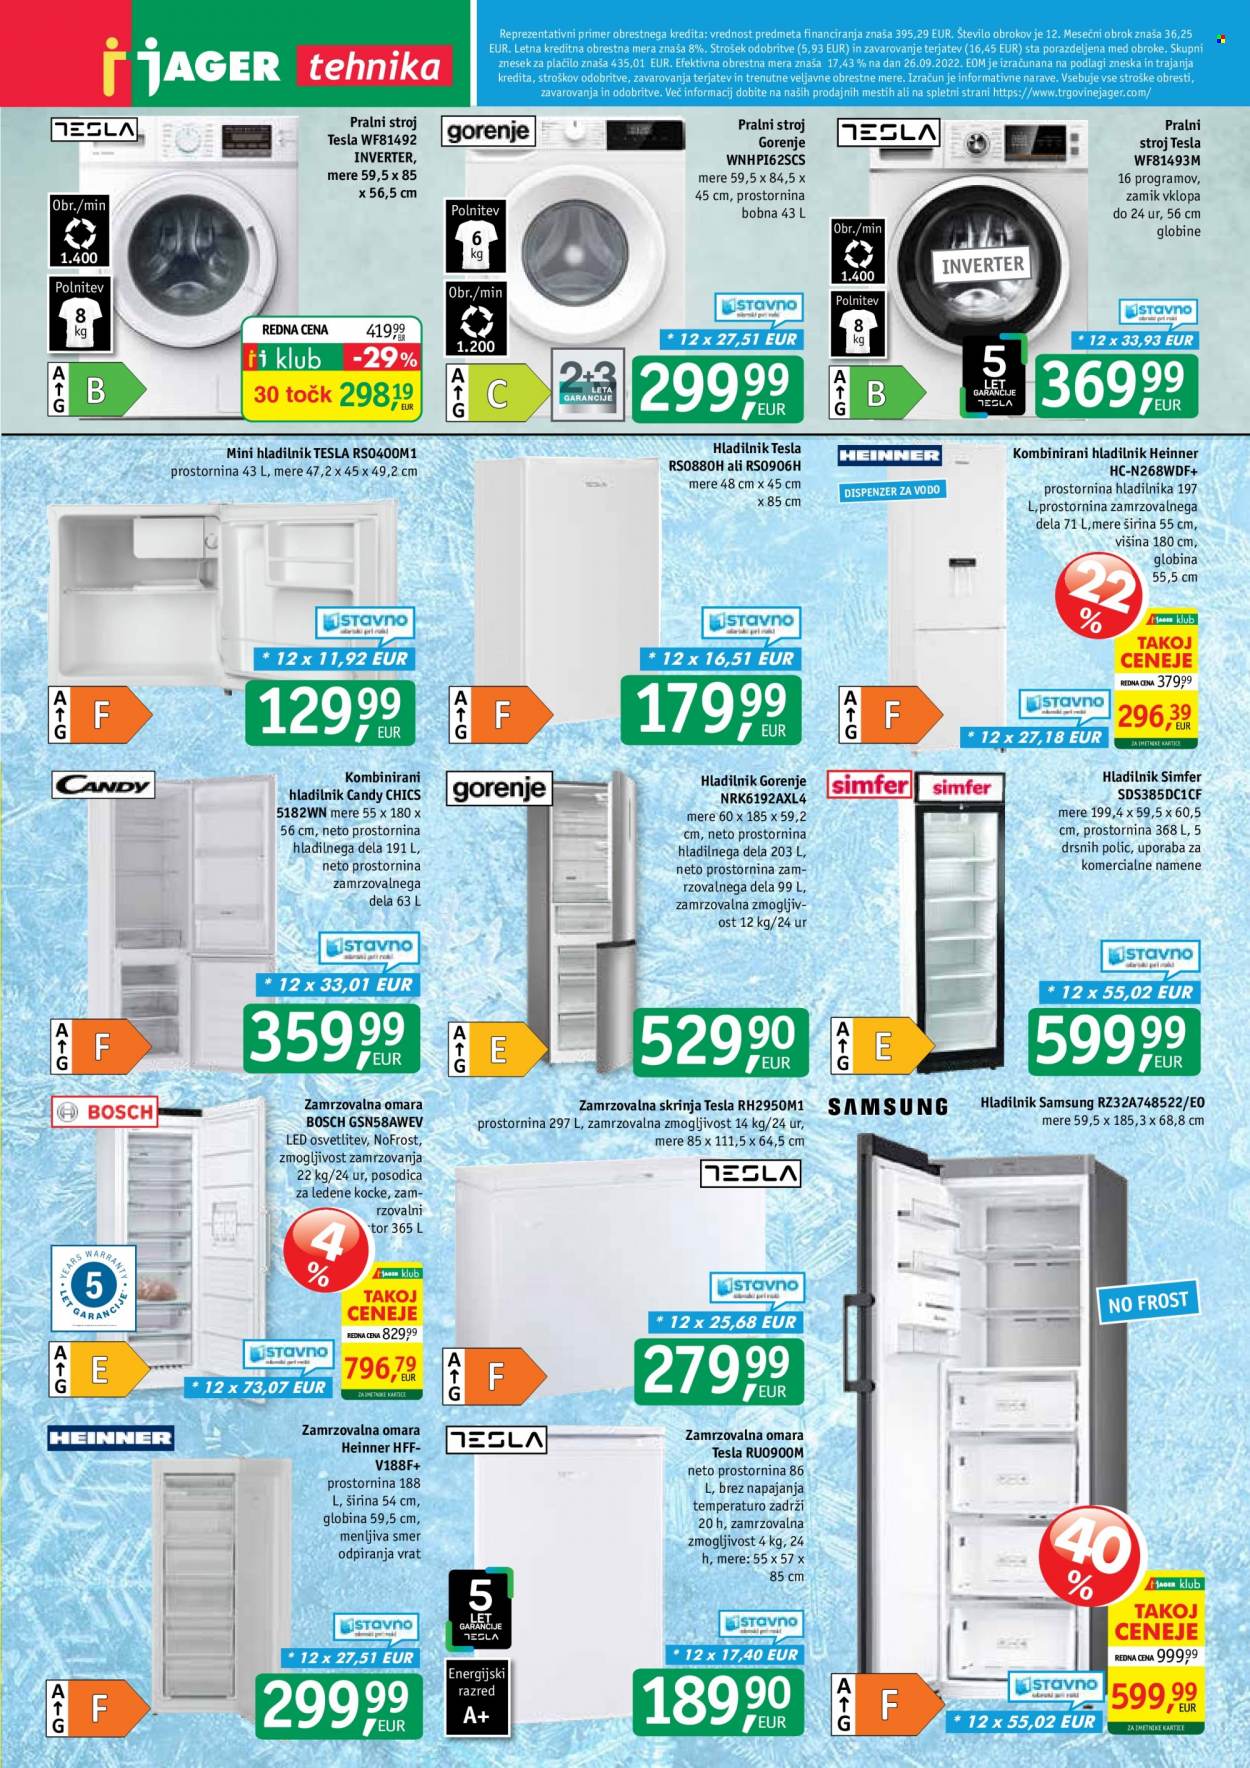 thumbnail - JAGER katalog - Ponudba izdelkov - Samsung, Bosch, Candy, Gorenje, zamrzovalna omara, zamrzovalna skrinja, hladilnik, pralni stroj. Stran 9.